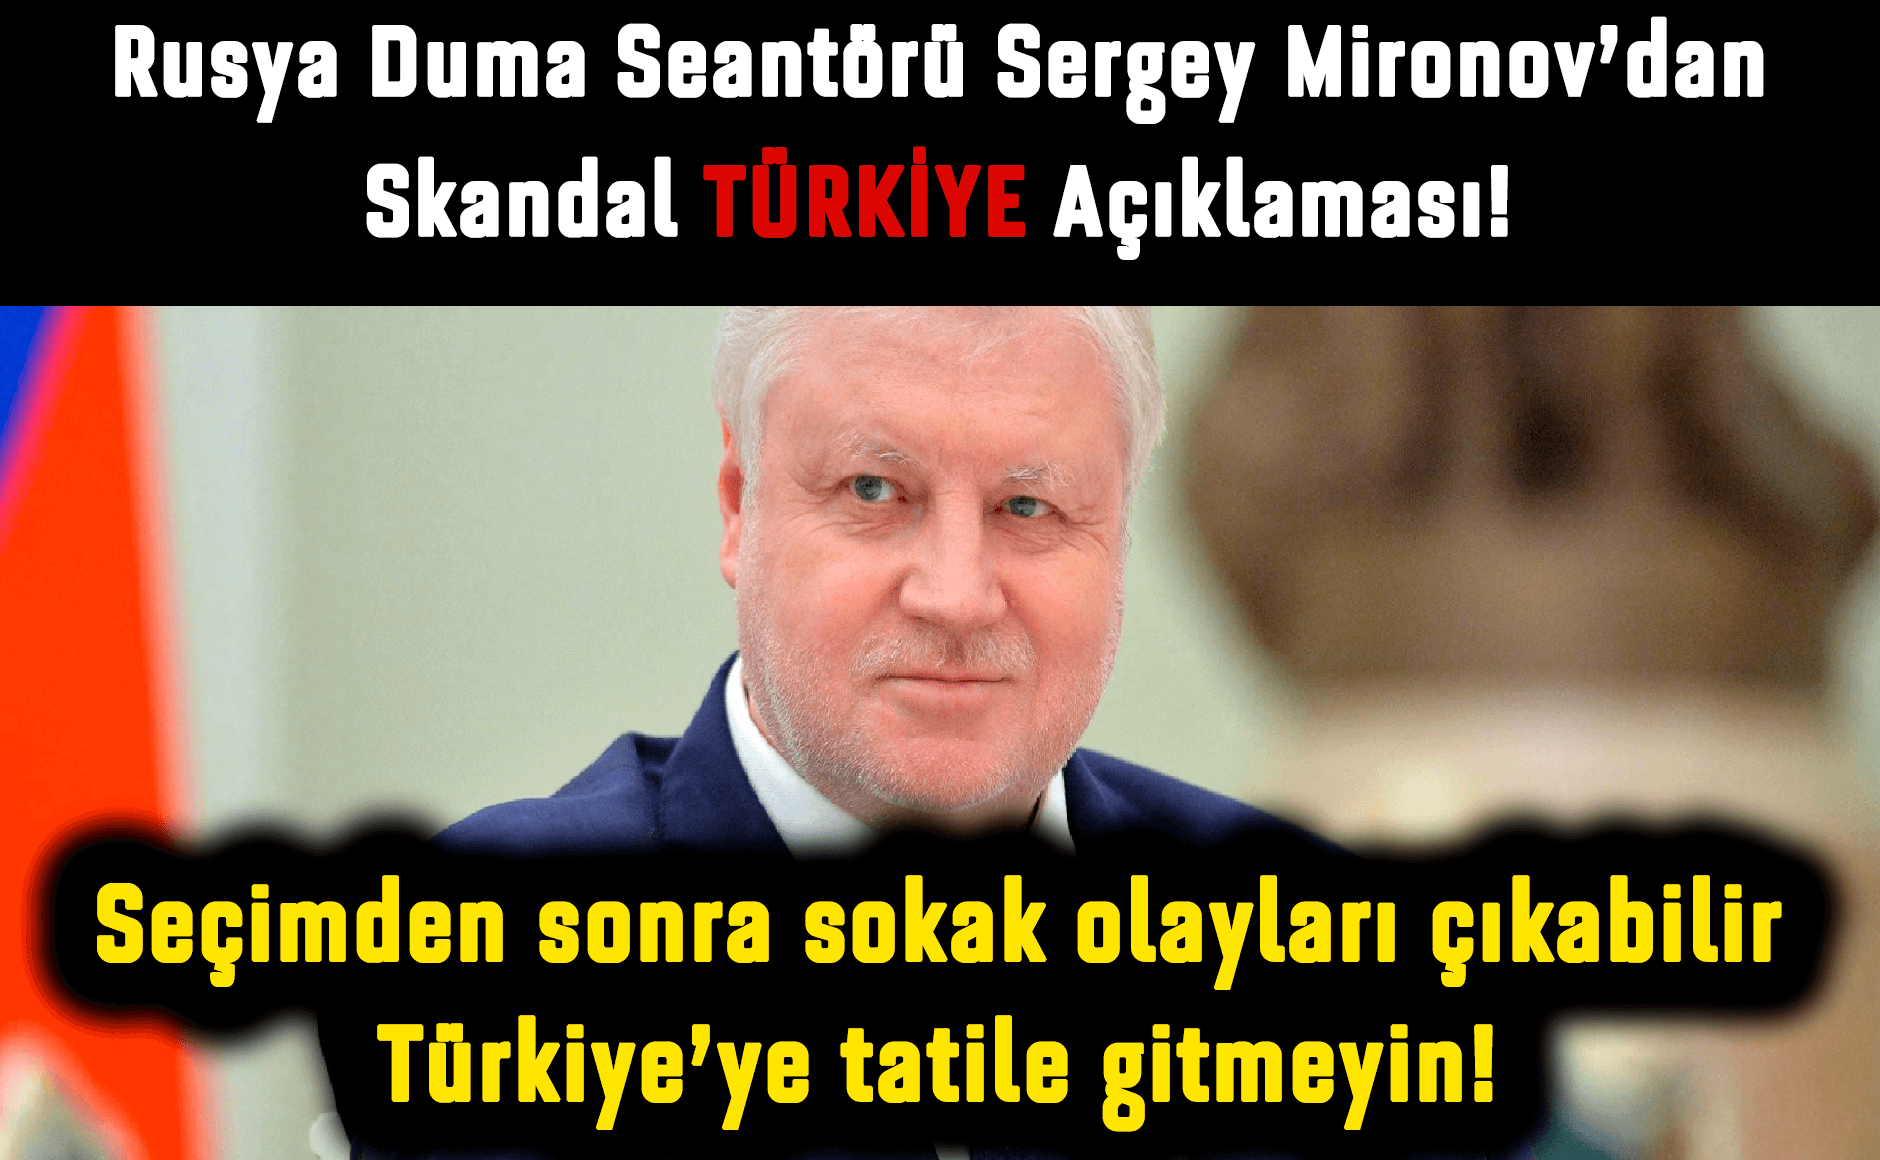 Rusya Duma Senatörü Sergey Mironov'dan Seçimden Sonra Sokak Olayları Çıkabilir Türkiye'ye Gitmeyin!